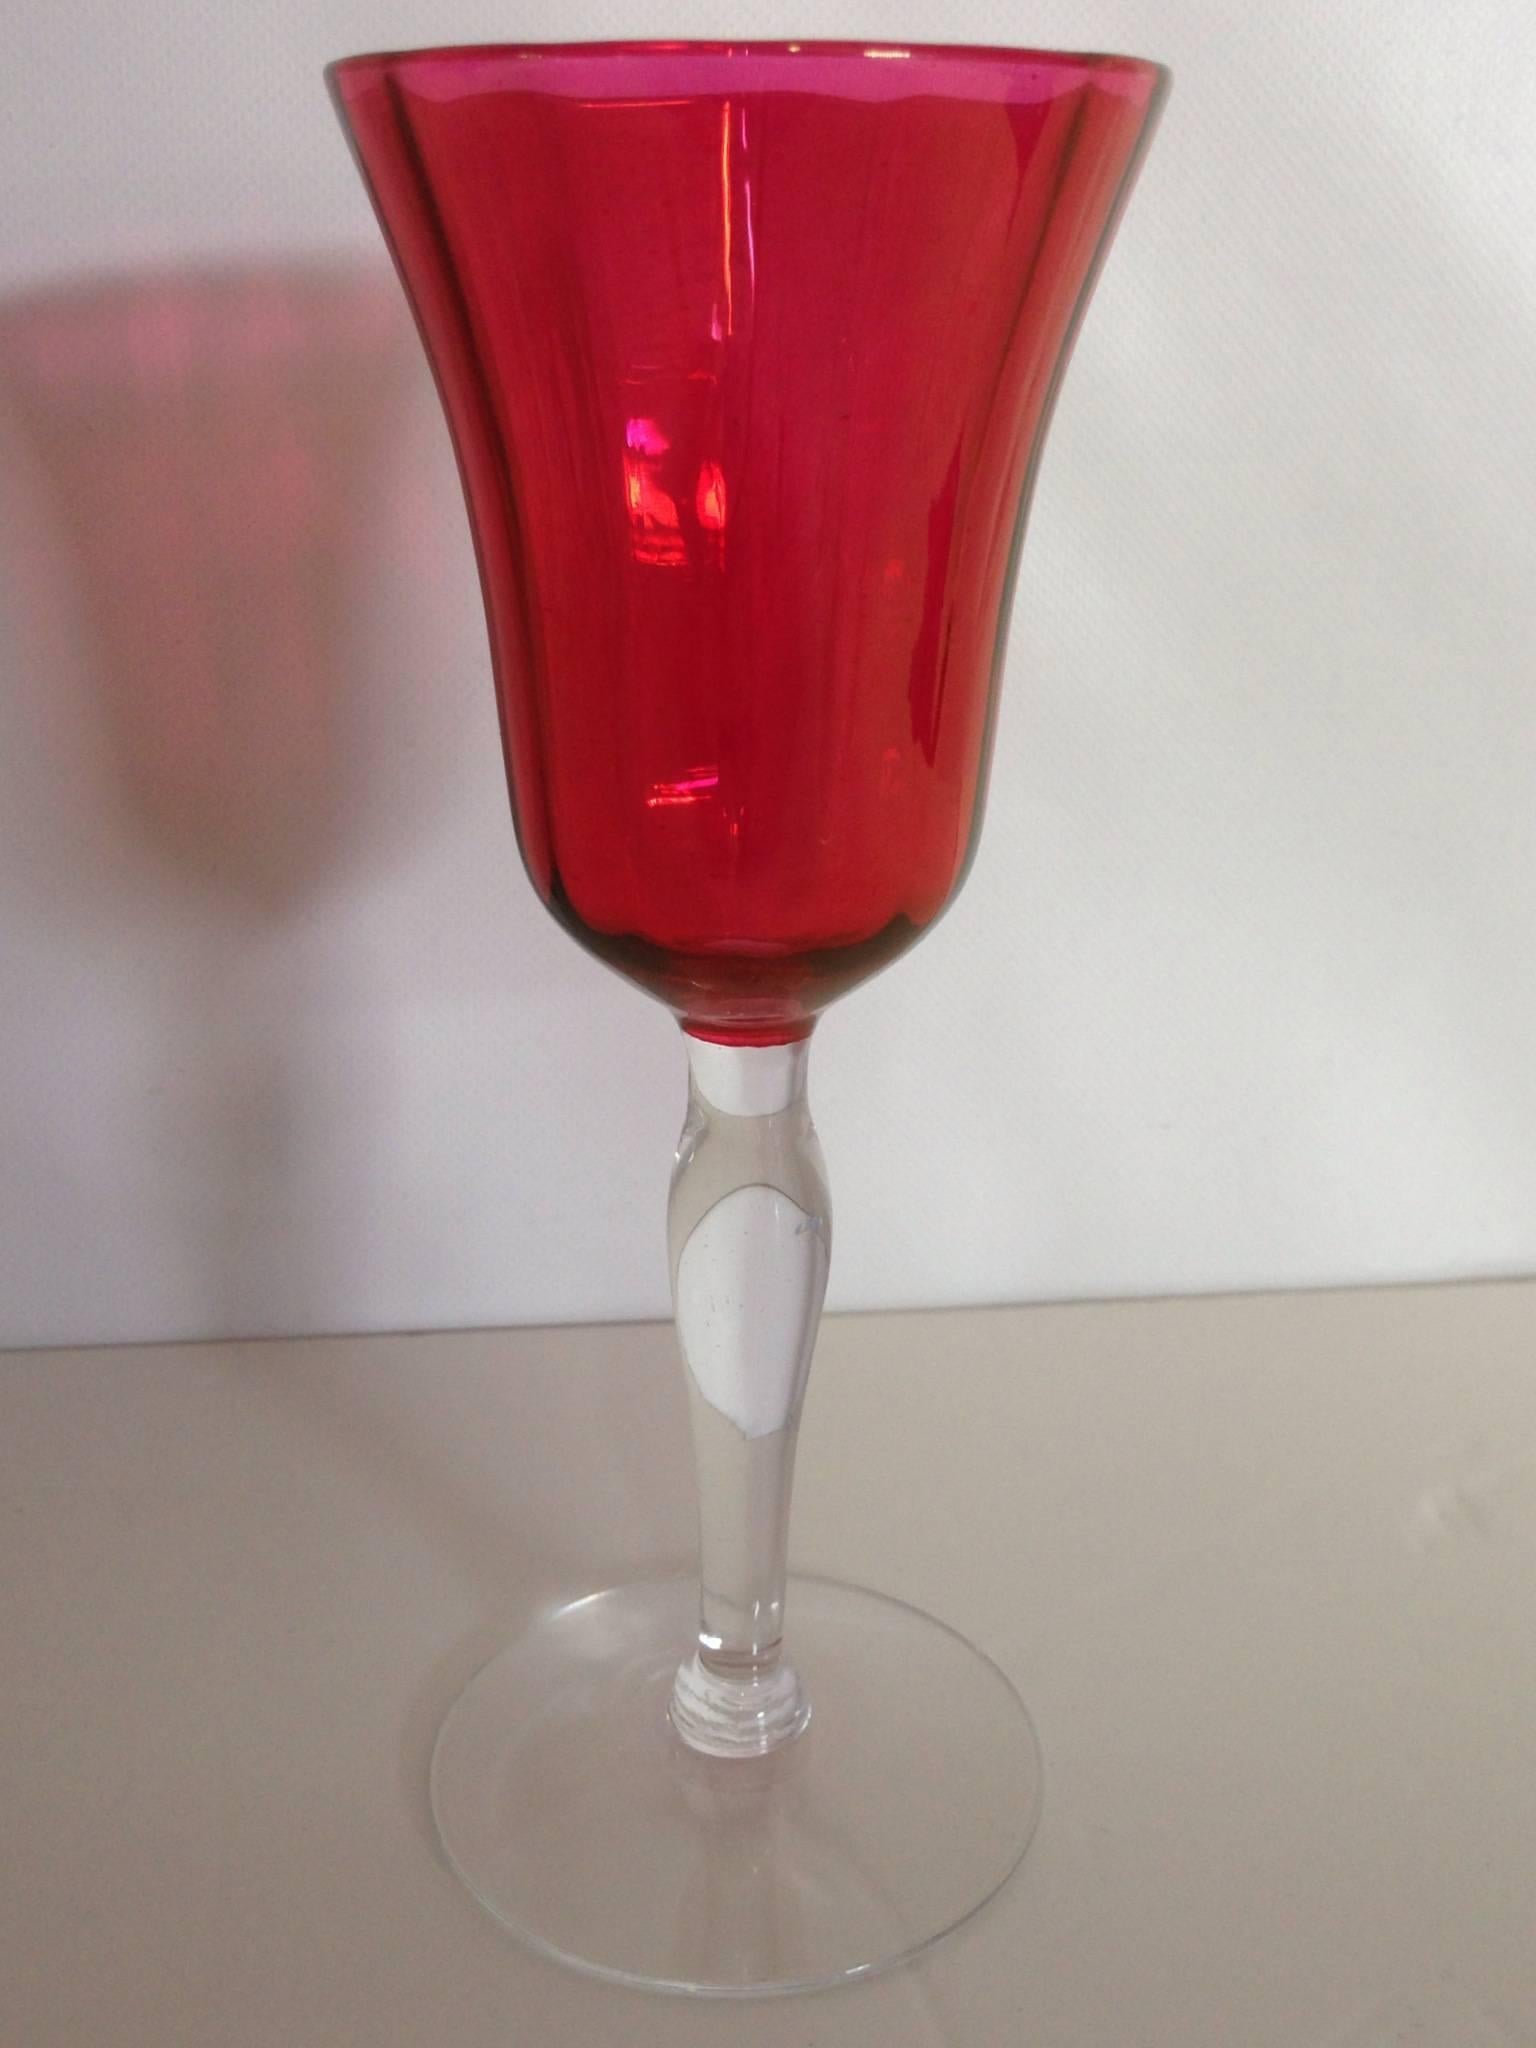 Vintage Optic Cranberry & Clear Crystal Stem Goblets.

